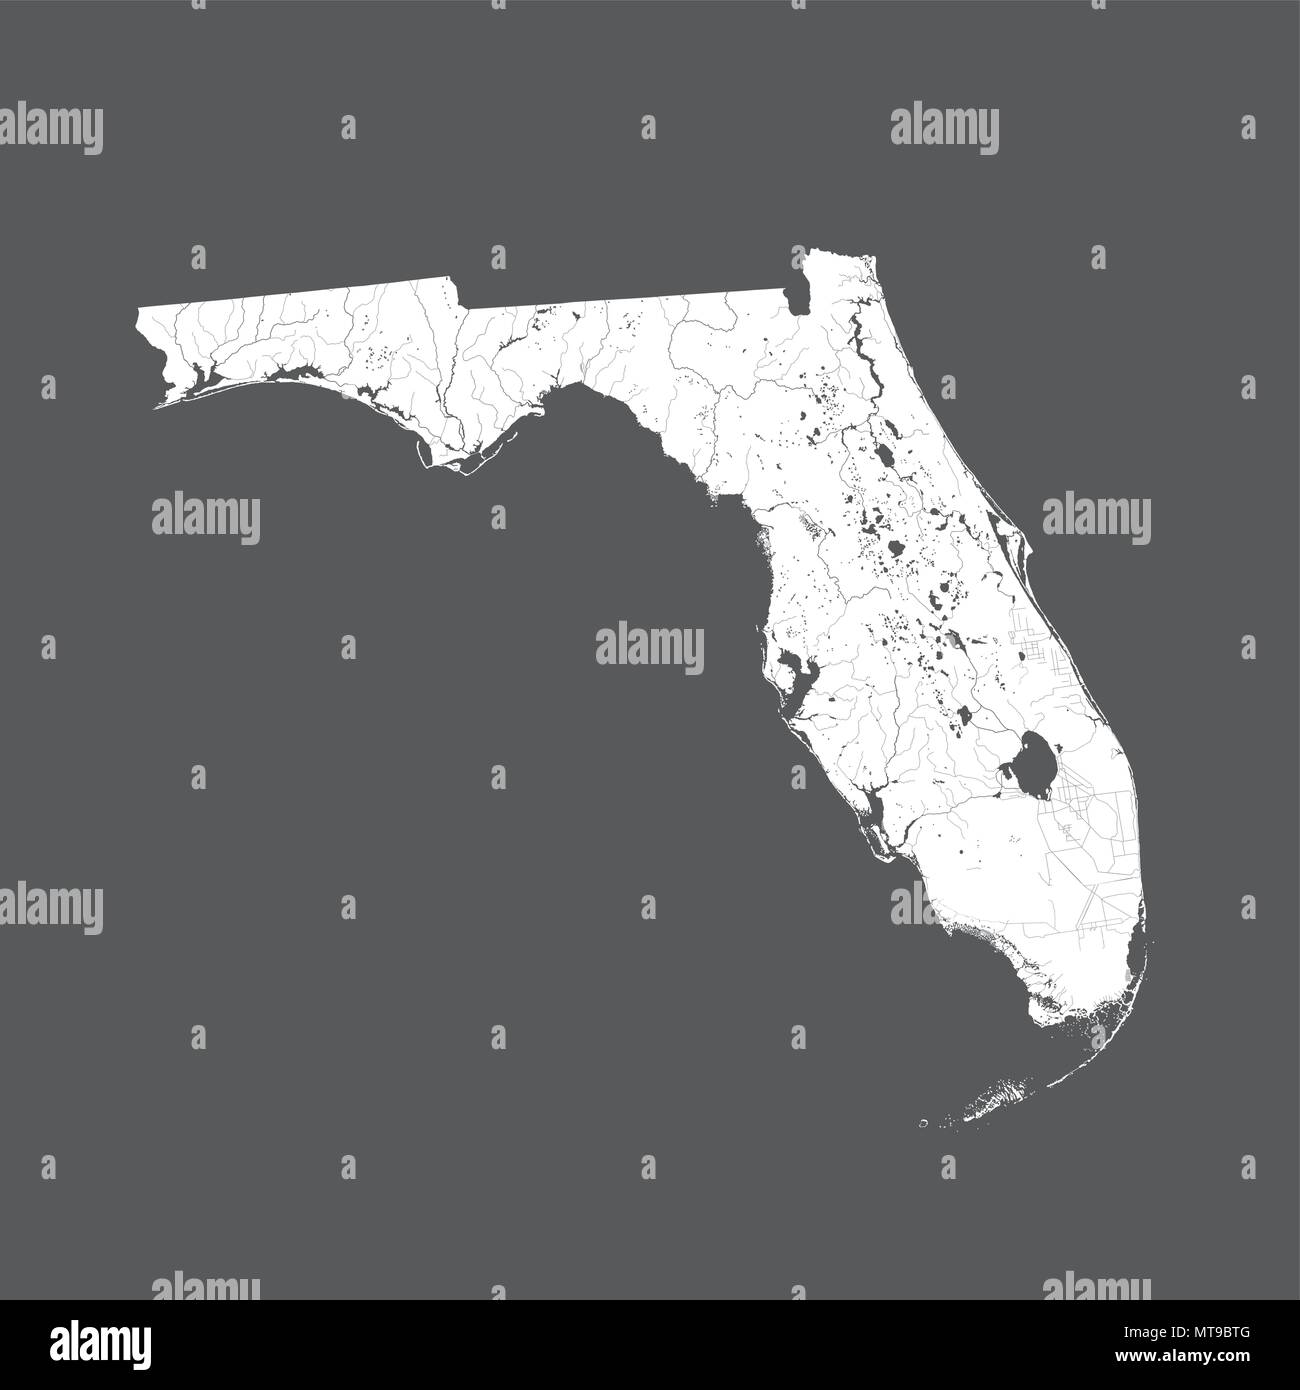 Der USA-Karte von Florida. Hand gemacht. Flüsse und Seen sind dargestellt. Bitte sehen Sie sich meine anderen Bilder von kartographischen Serie - sie sind alle sehr Detaile Stock Vektor